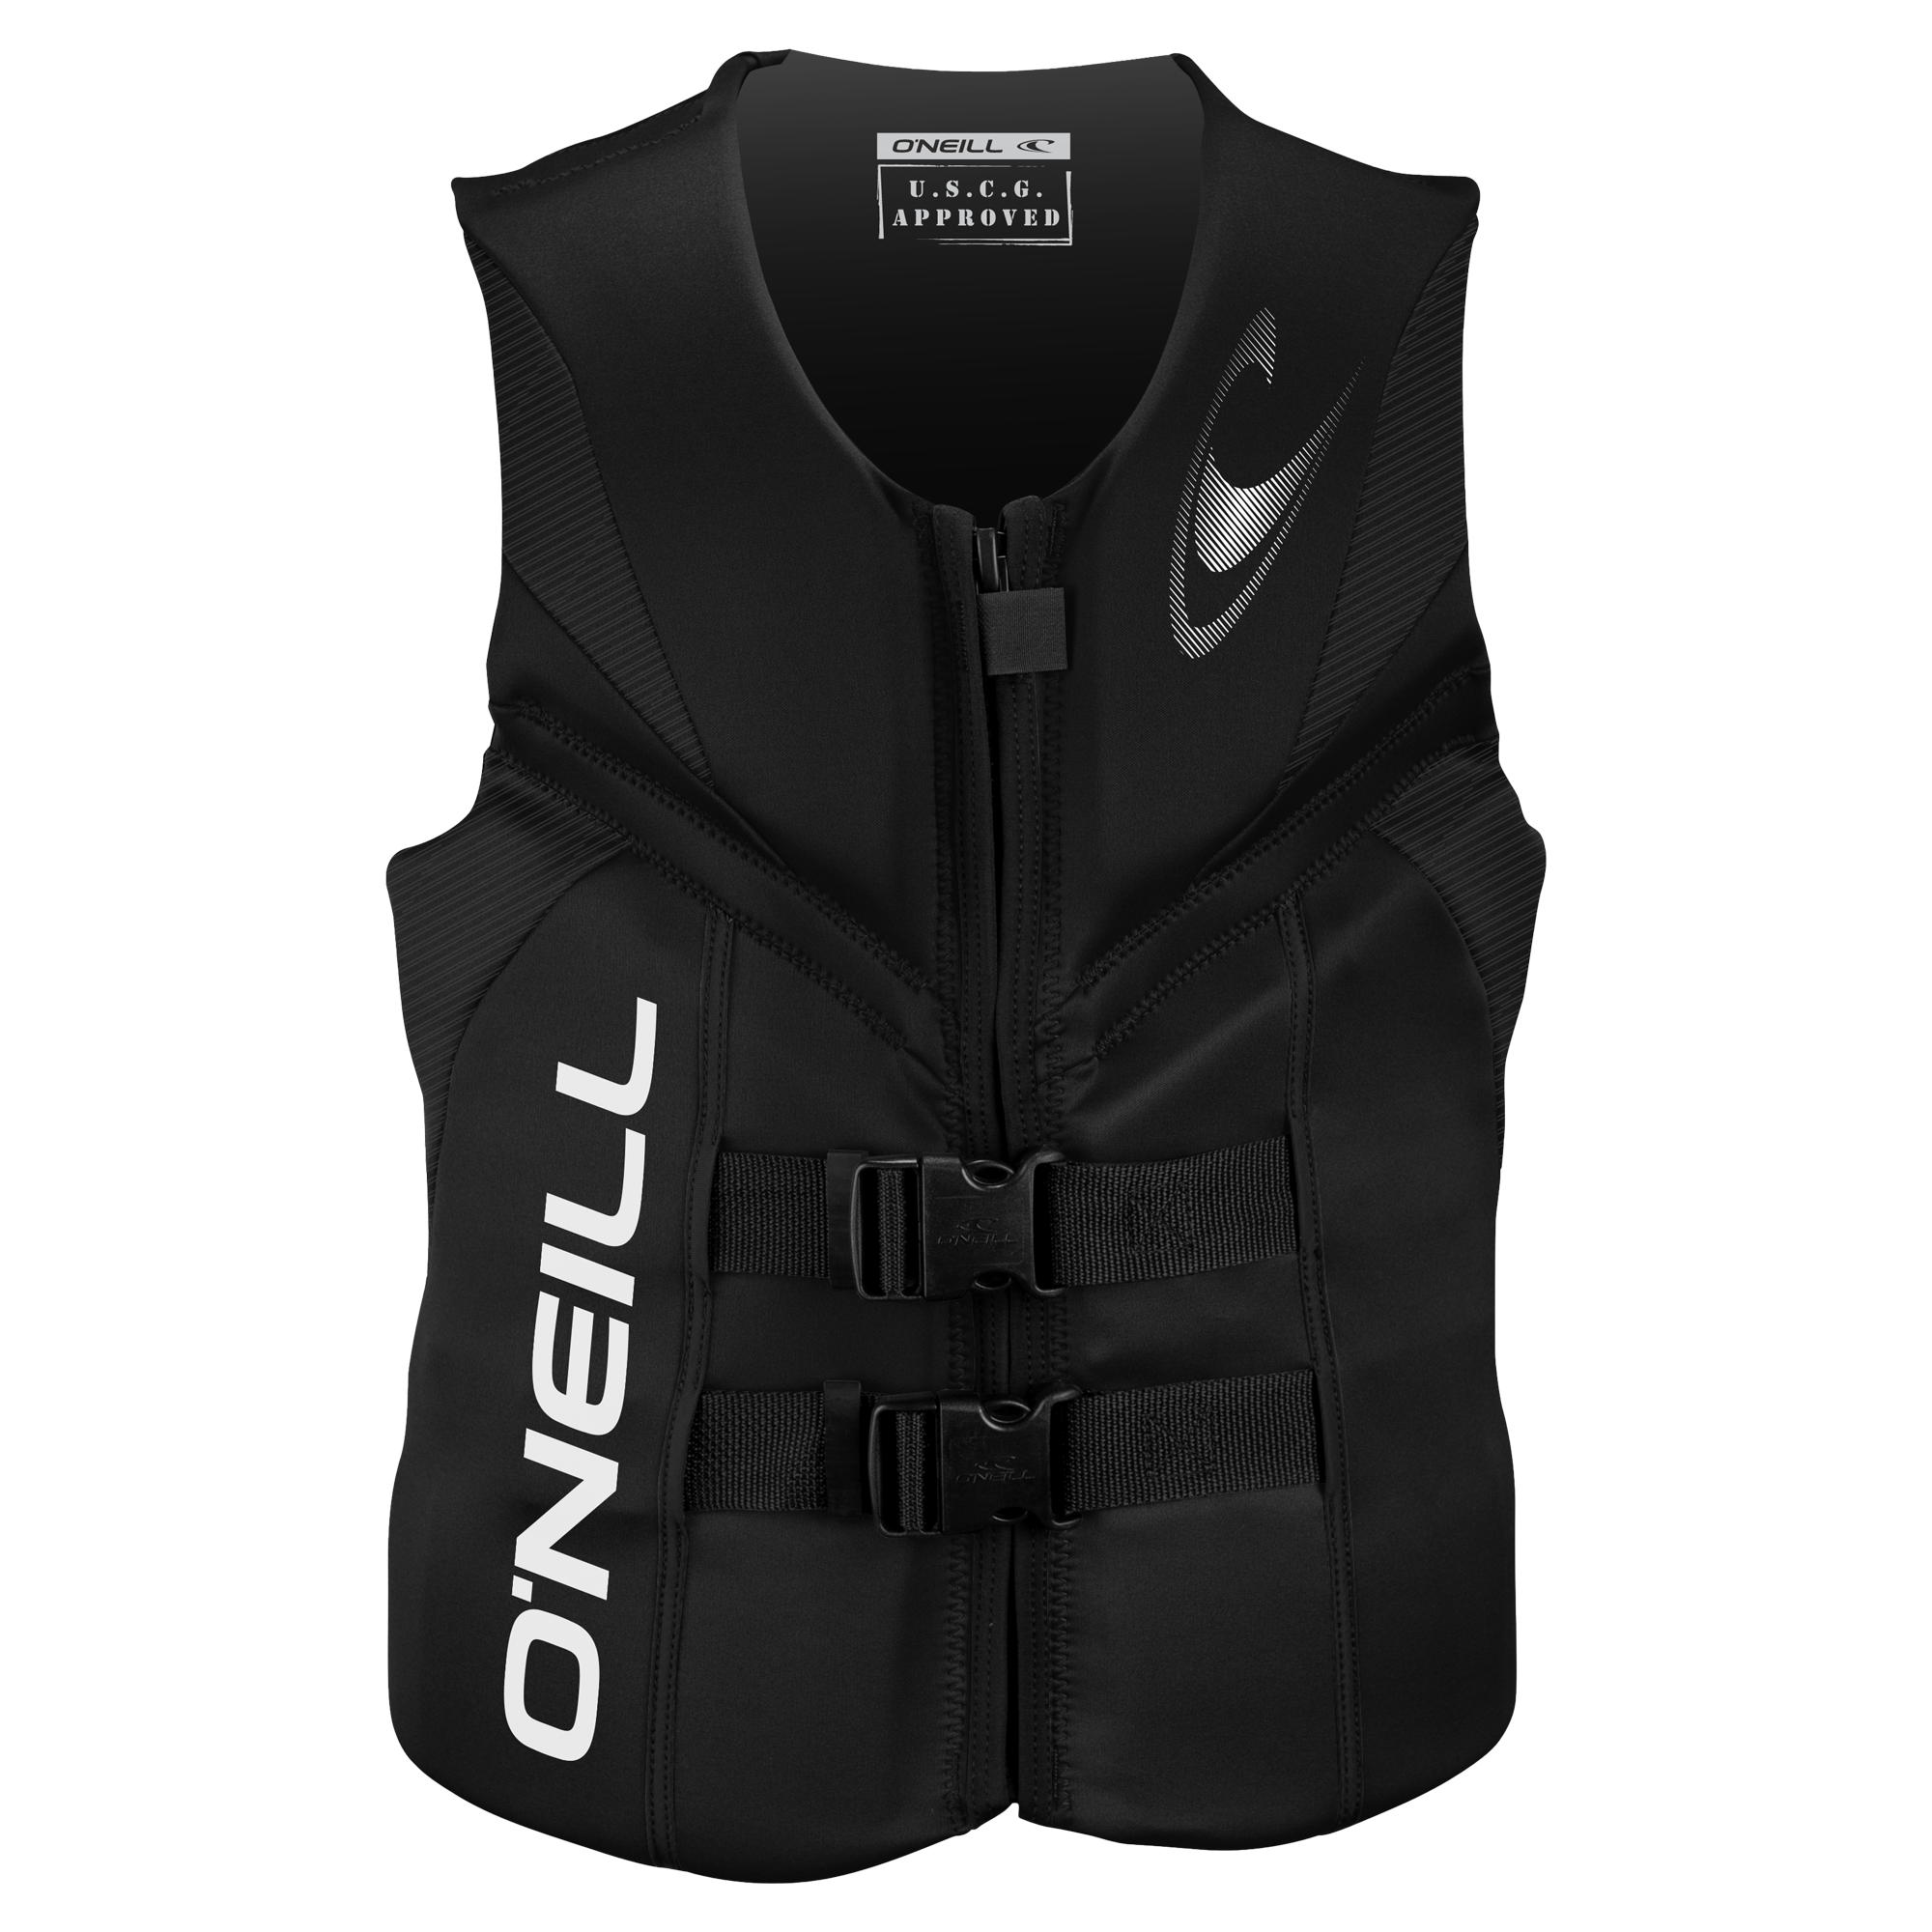 O'Neill Reactor USCG Life Vest